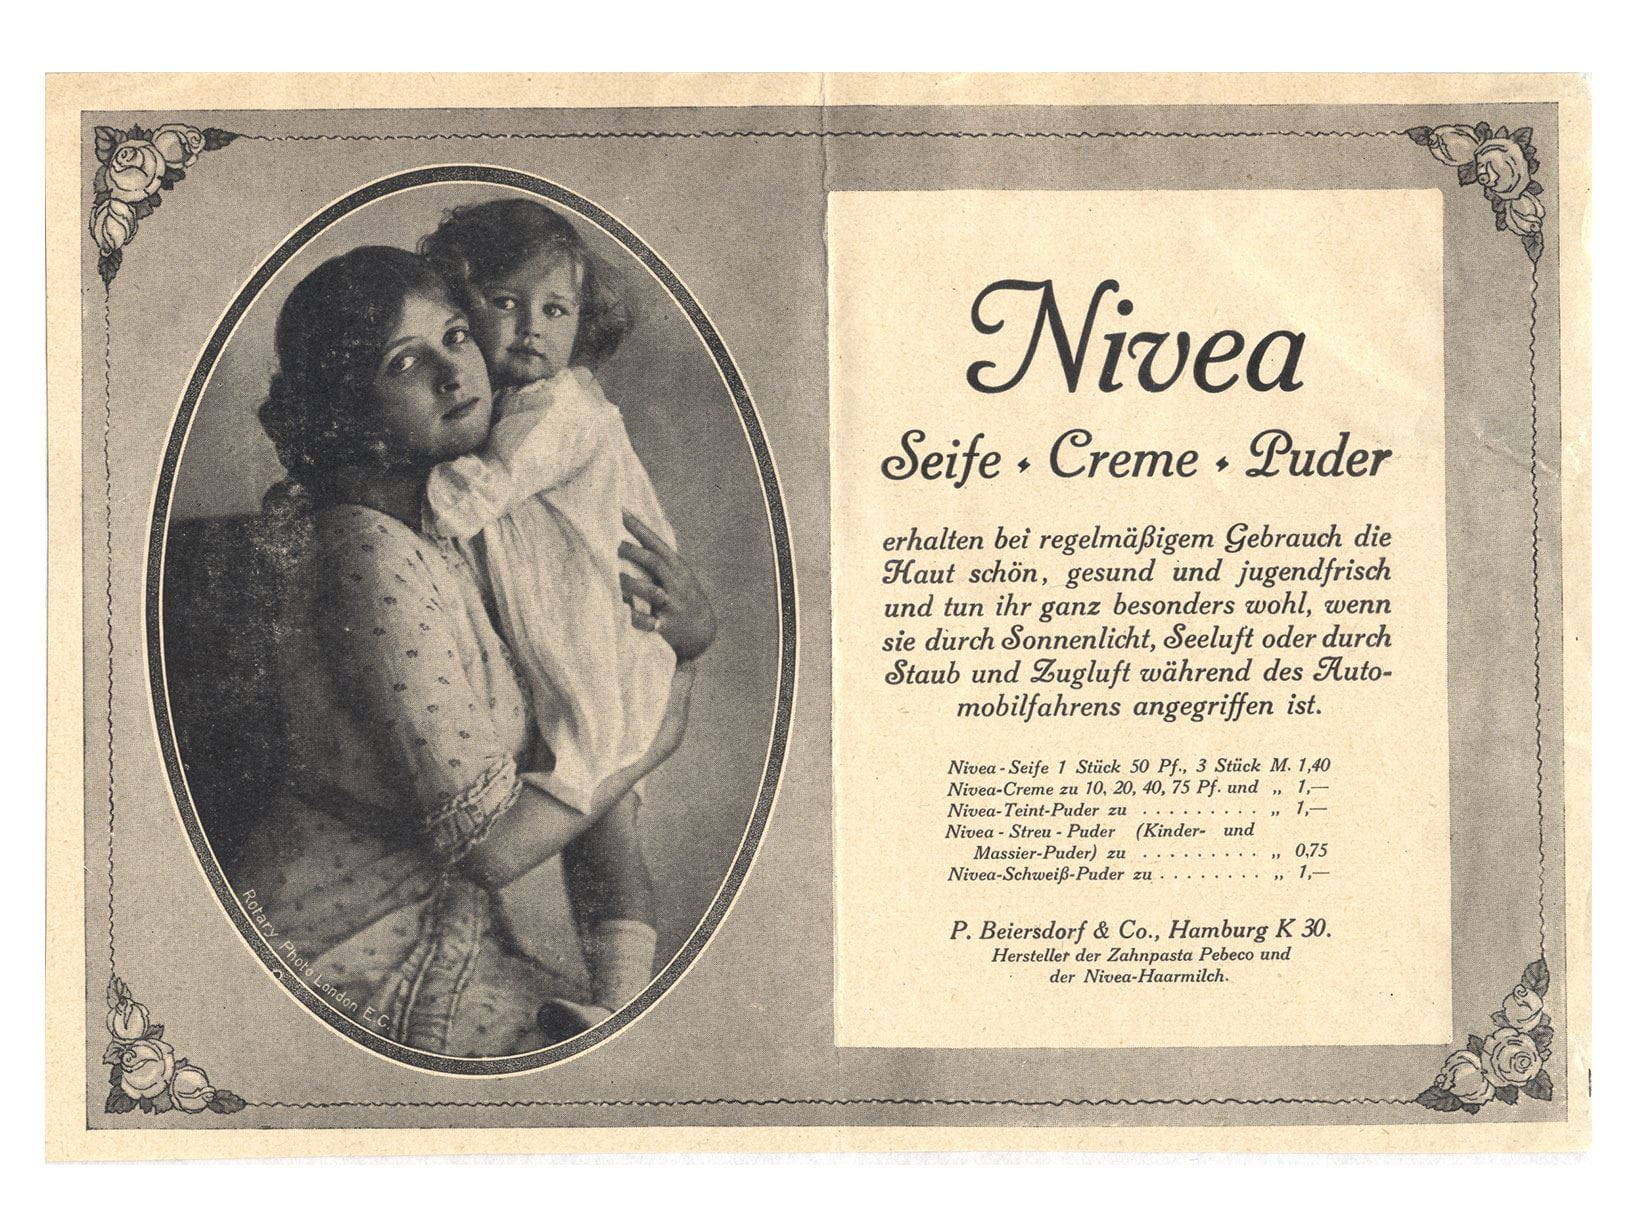 Реклама крема, пудры и мыла NIVEA, 1913 г.